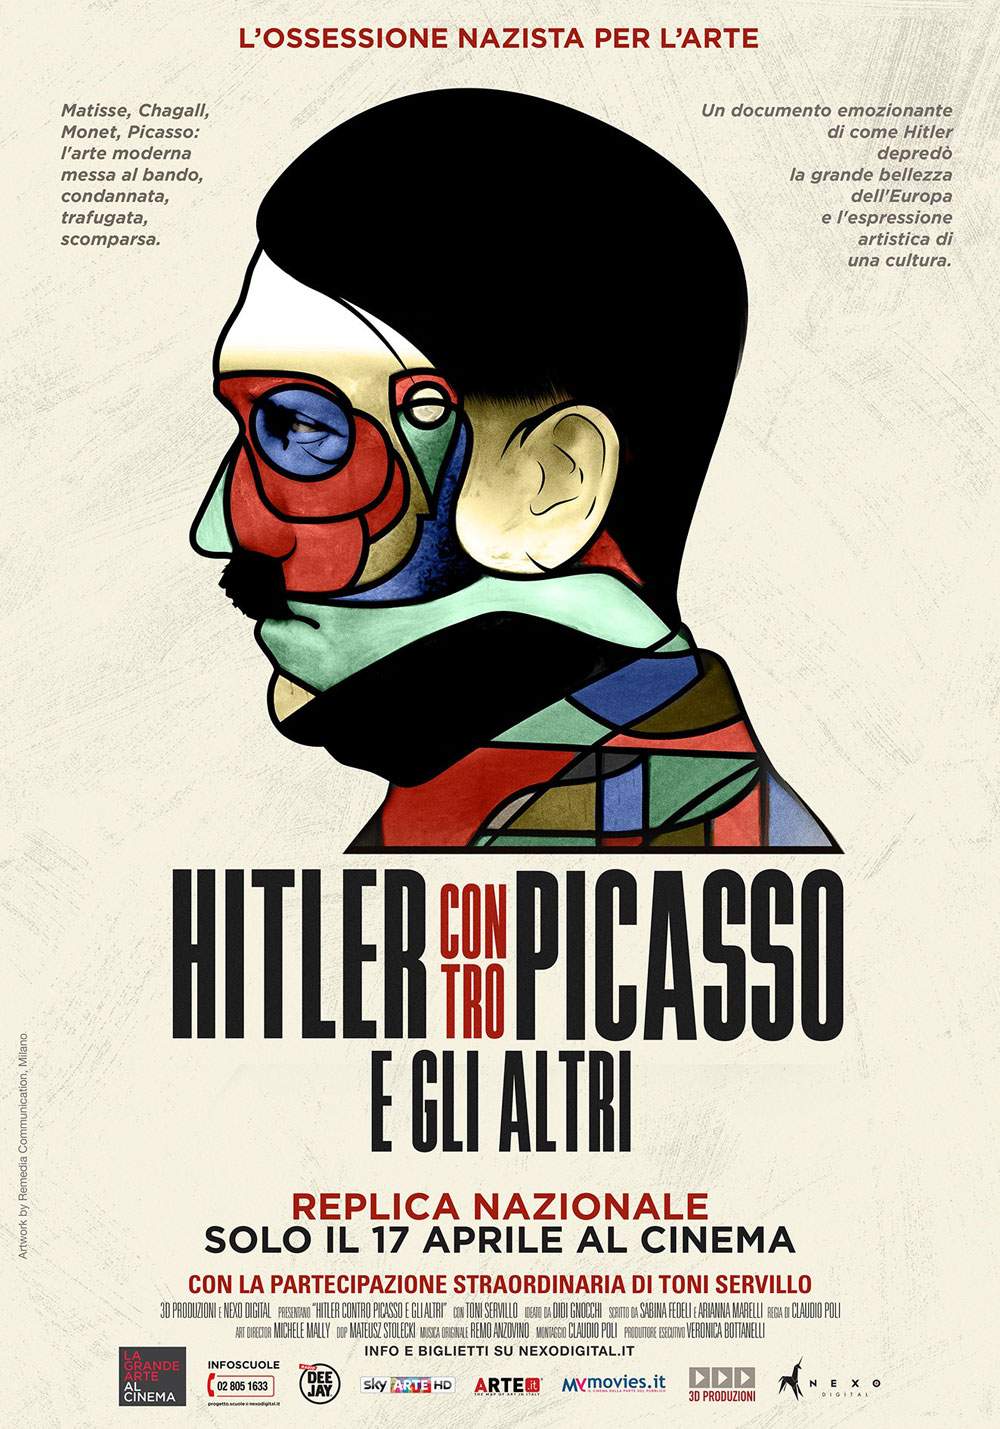 Grand succès pour Hitler contre Picasso : réplique nationale le 17 avril